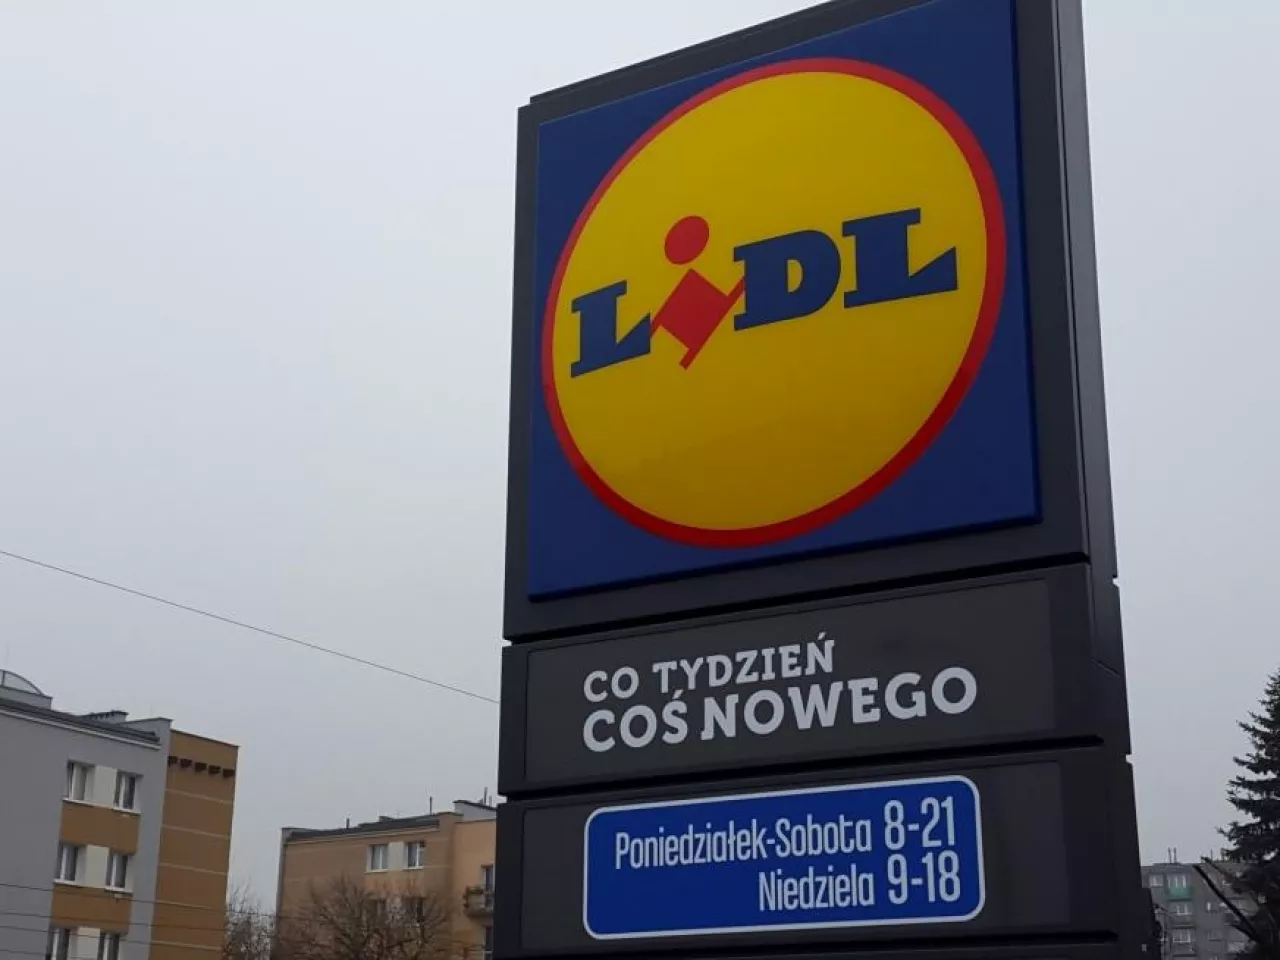 Na jesieni przyszłego roku w Katowicach działać będzie już 10 sklepów Lidl (fot. wiadomoscihandlowe.pl)